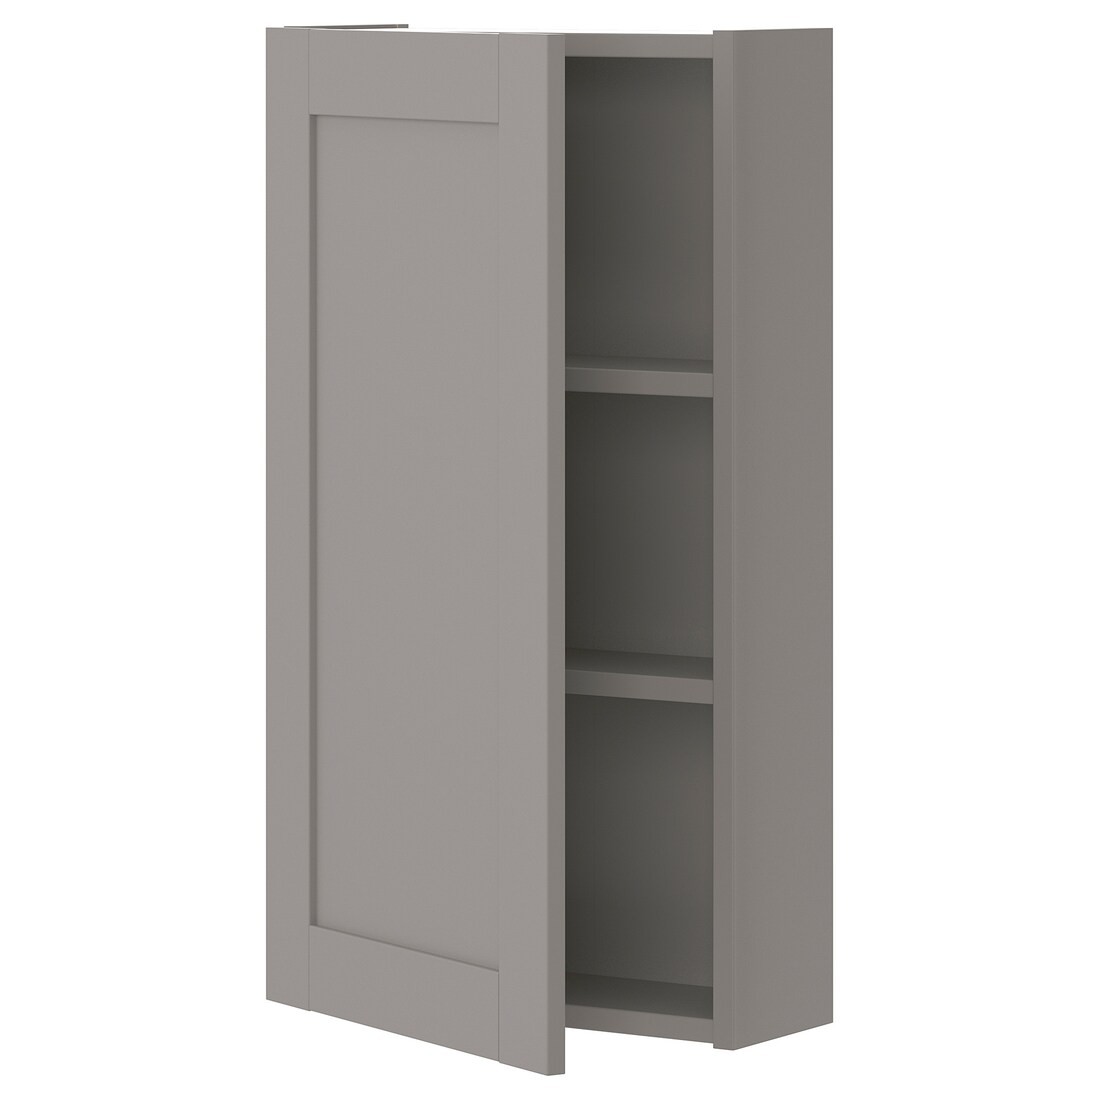 IKEA ENHET ЭНХЕТ Навесной шкаф с 2 полками / дверцами, серый / серая рама, 40x17x75 см 89322498 | 893.224.98